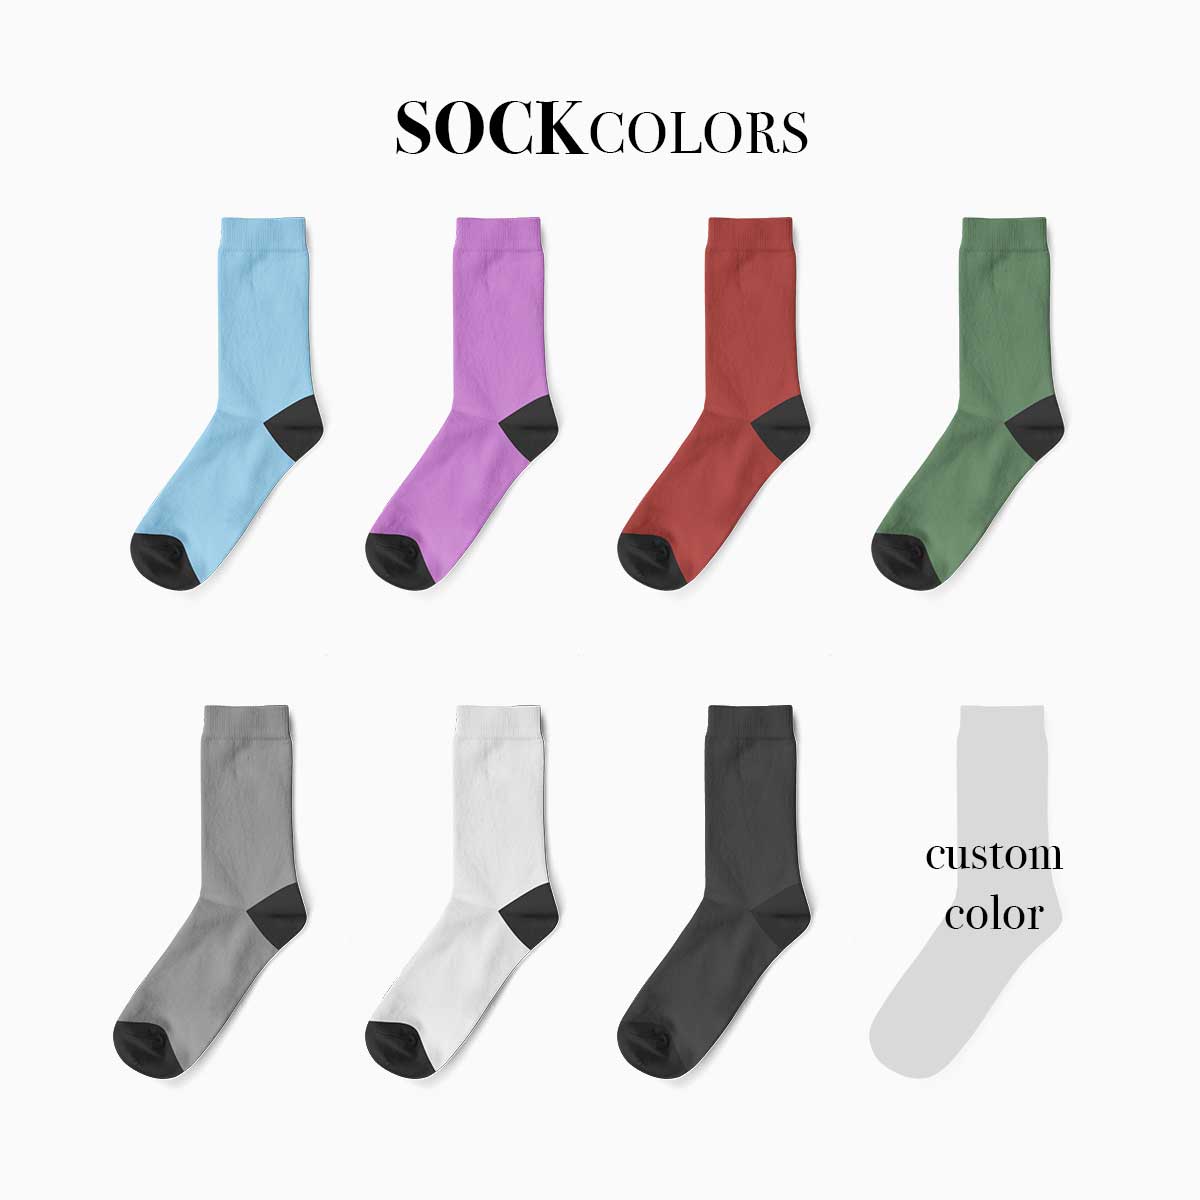 Custom Cat Face Socks